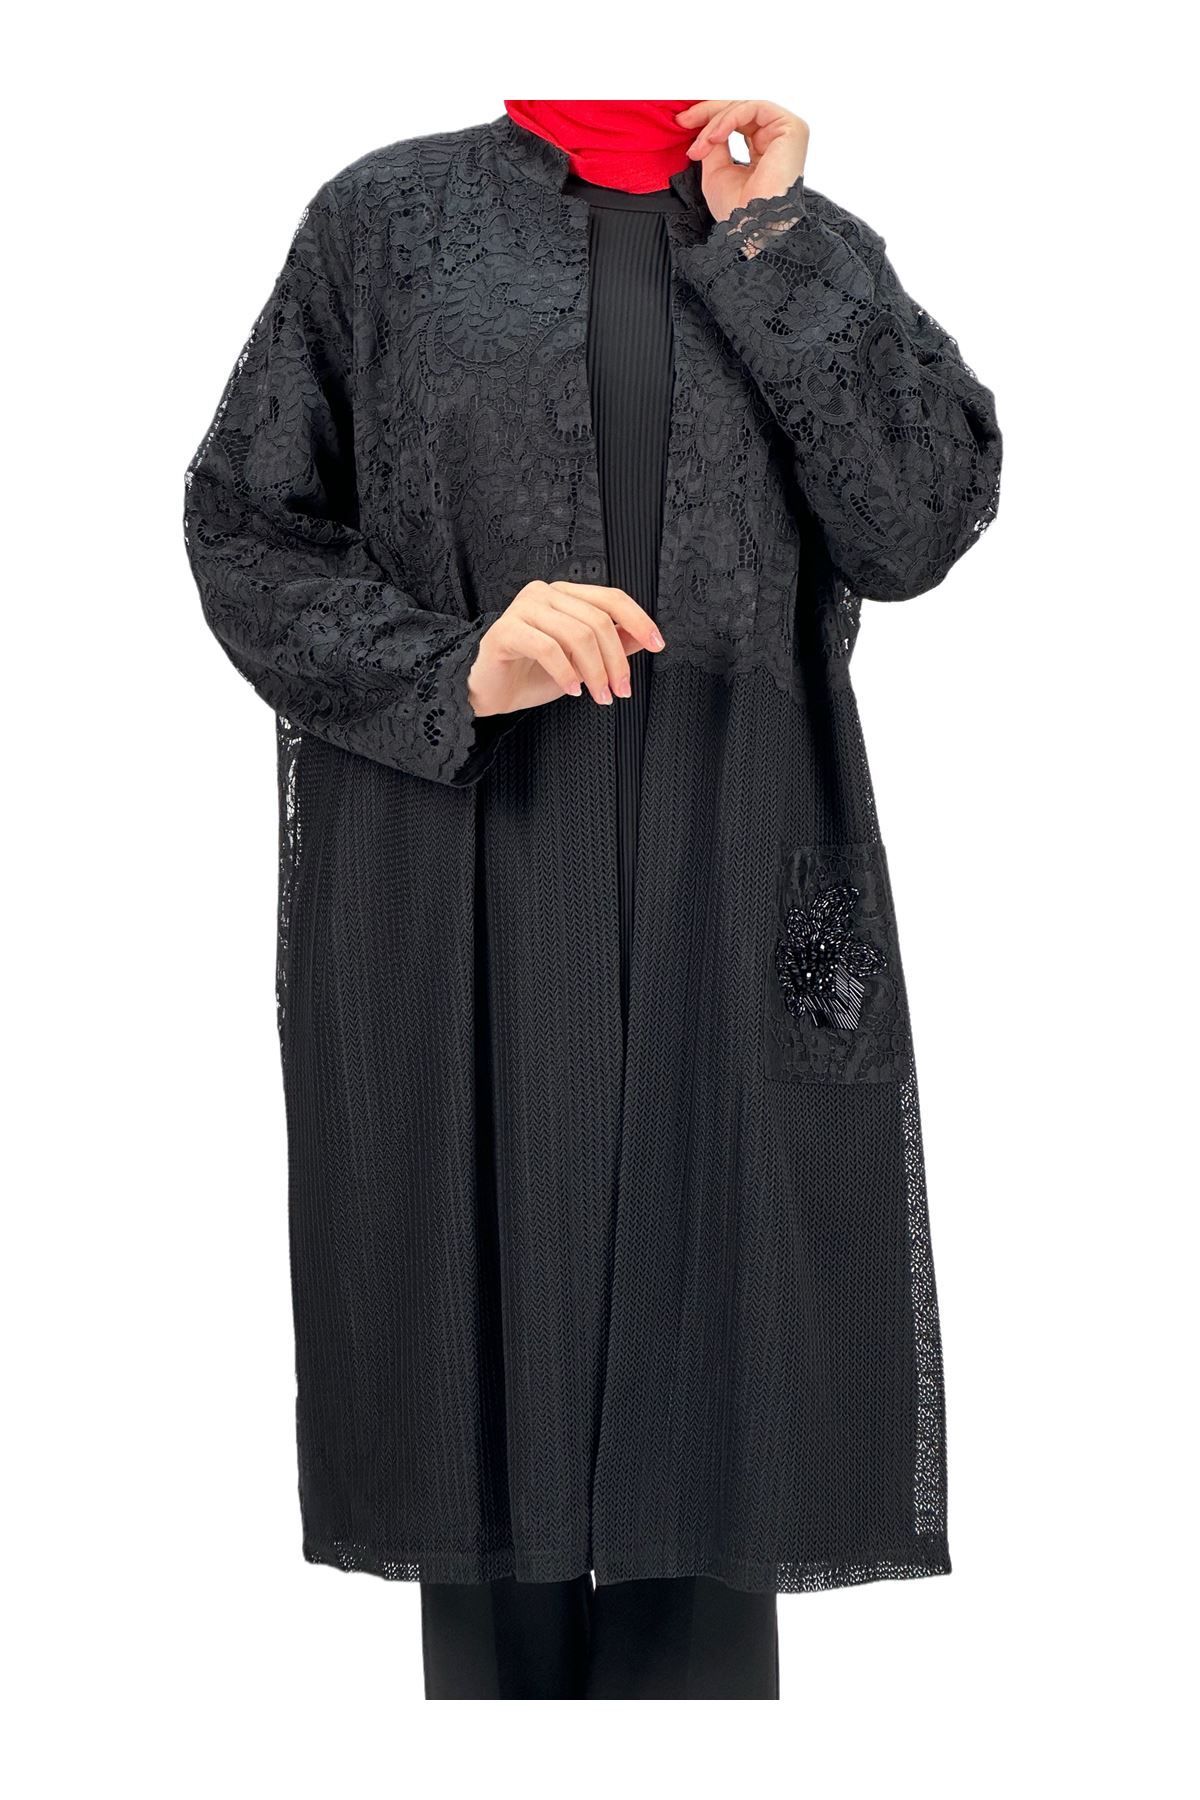 ottoman wear OTW48446 Büyük Beden Ceketli Takım Siyah